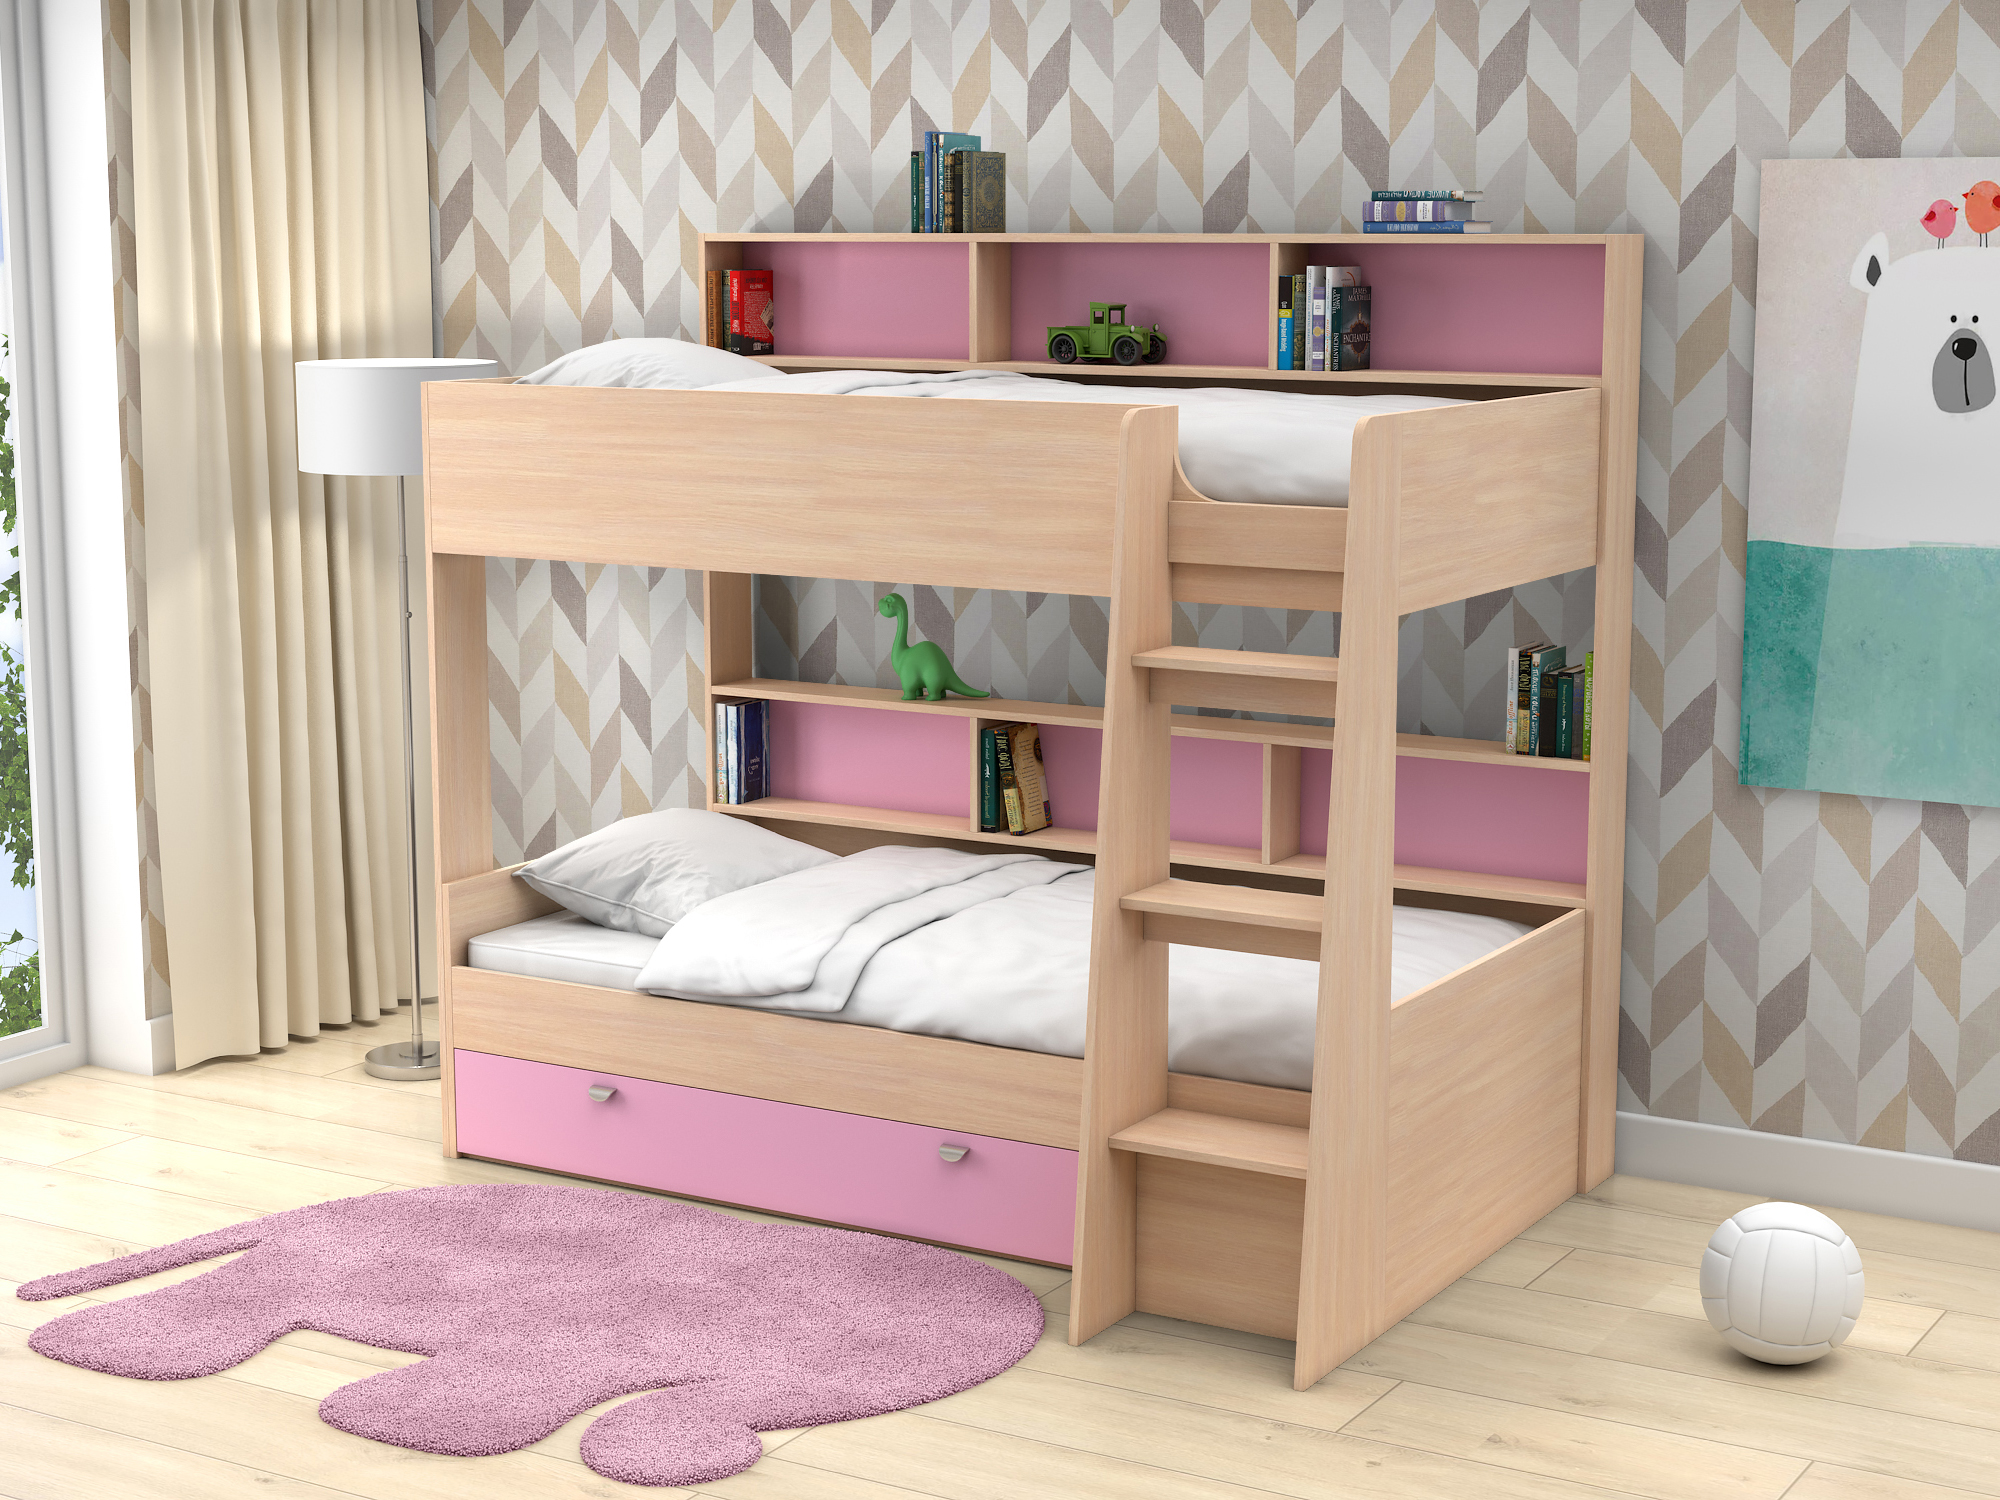 Двухъярусная кровать Golden Kids-1 (90х200) Розовый, Белый, Бежевый, ЛДСП двухъярусная кровать golden kids 1 gк 01 кб фр белый розовый